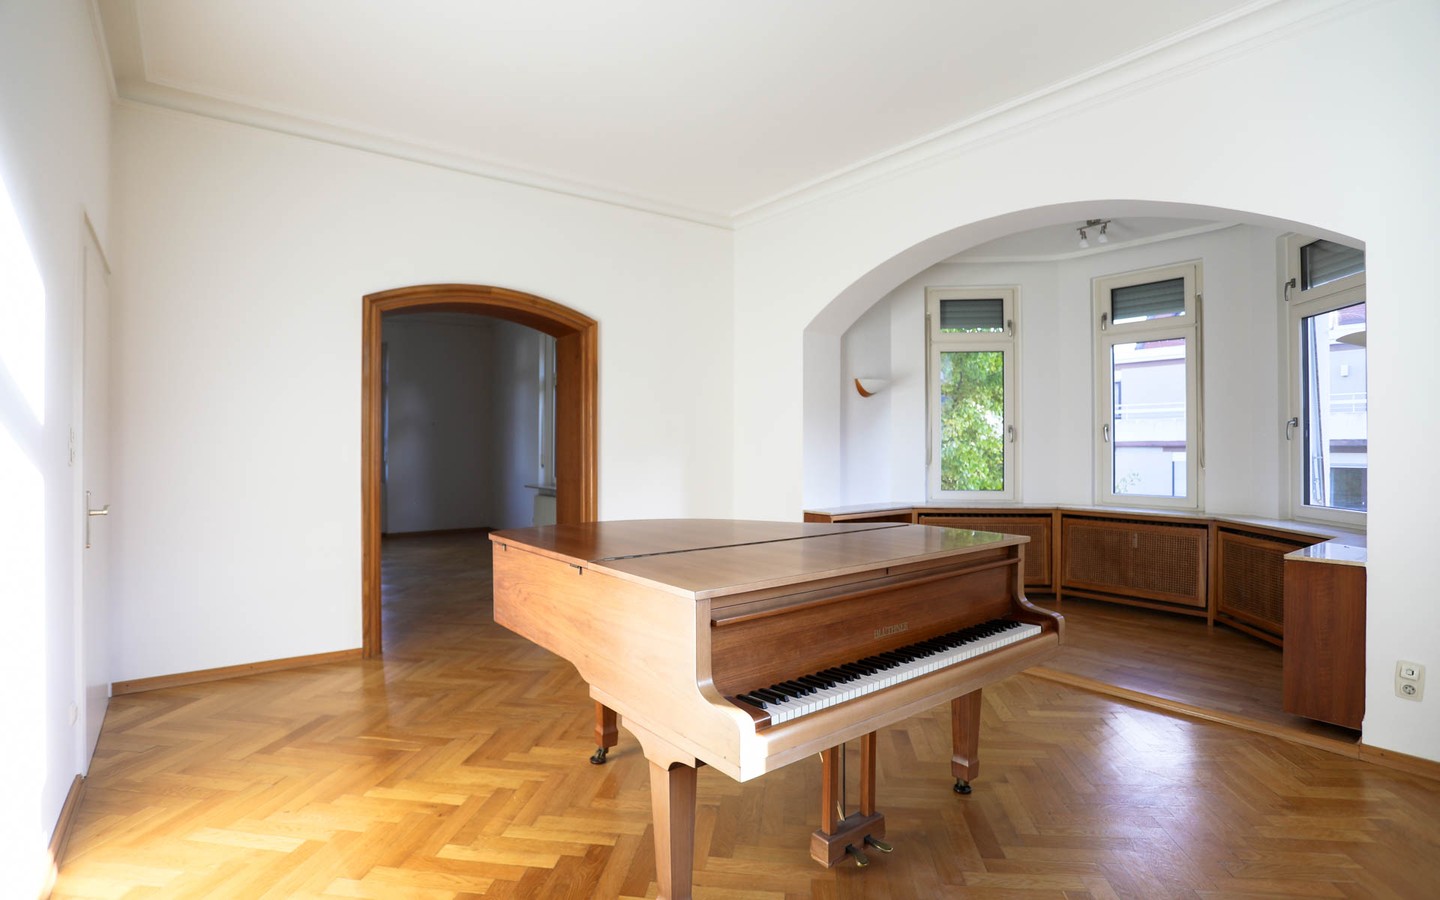 Wohnzimmer 1. OG - Vermächtnis eines großen Bauherrn: Villa Klose, Herzstück des Englischen Viertels in Neuenheim